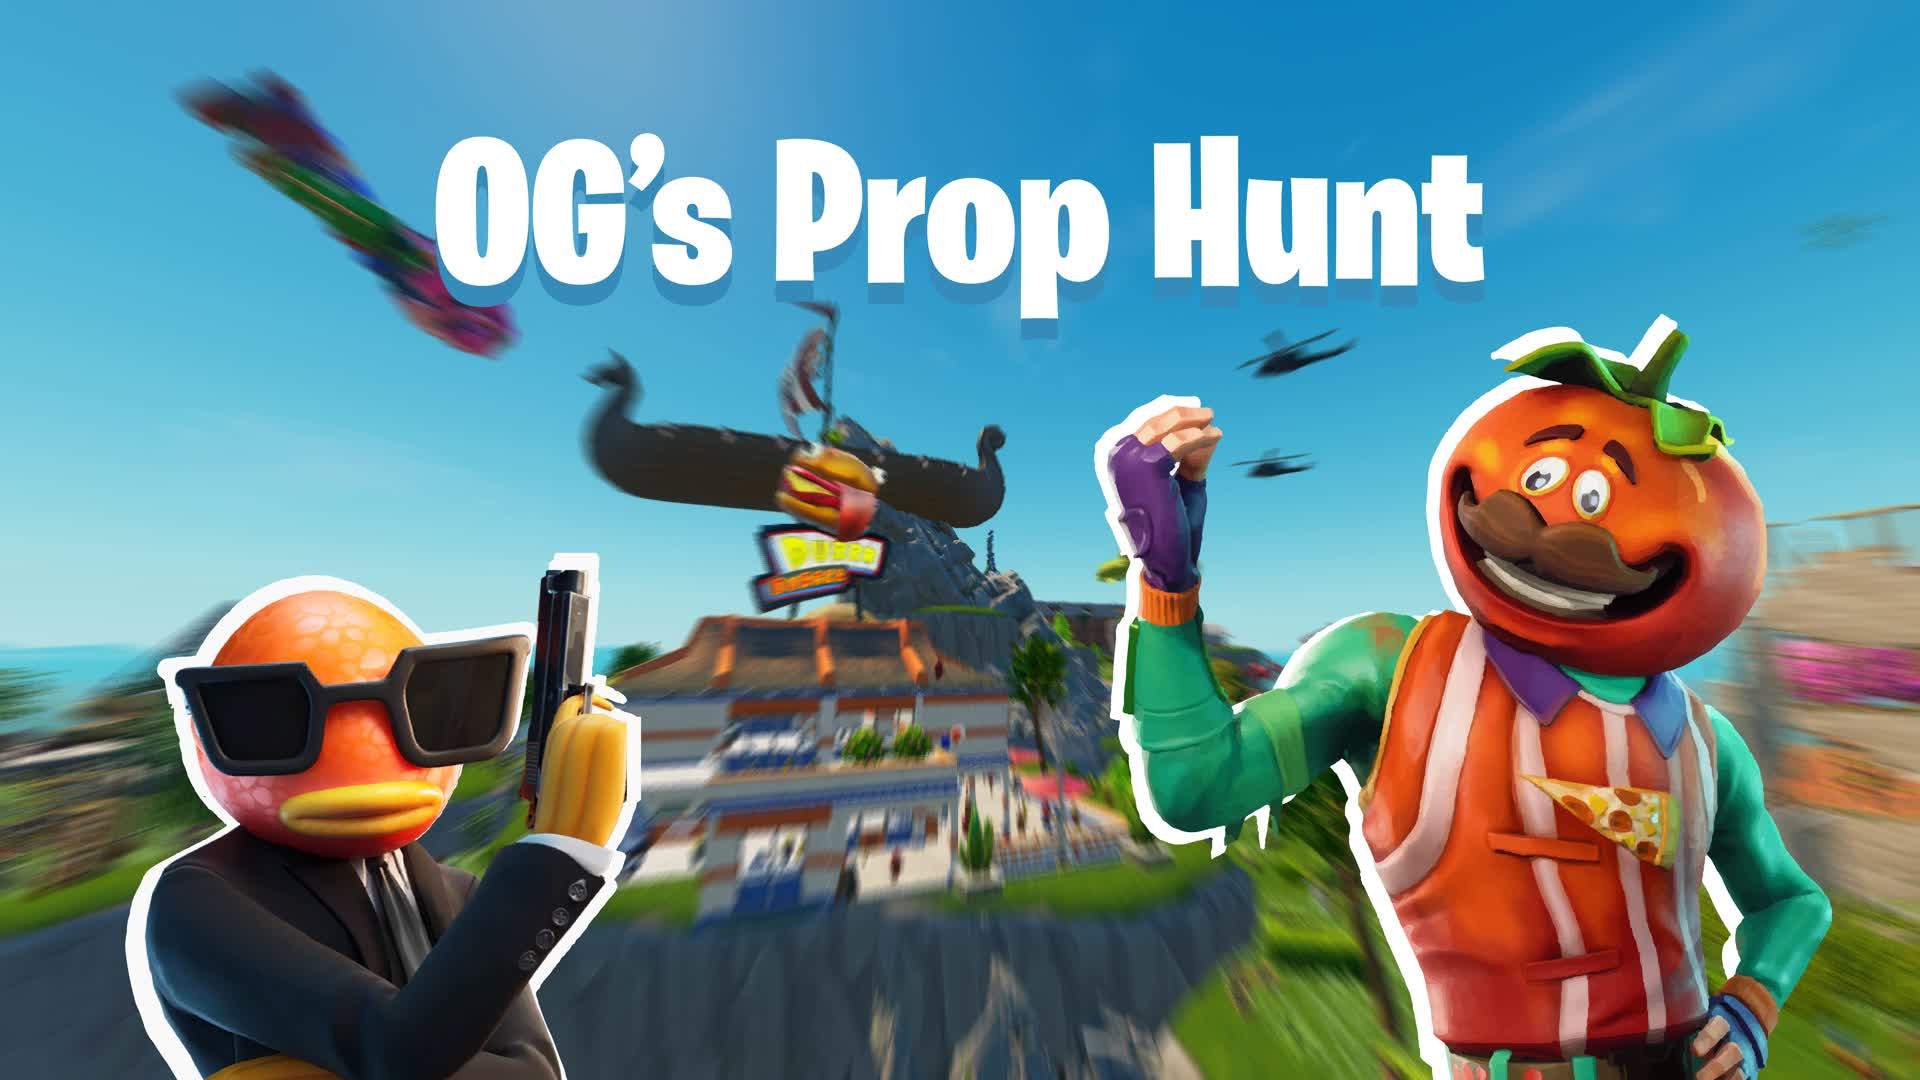 Og's Prop Hunt